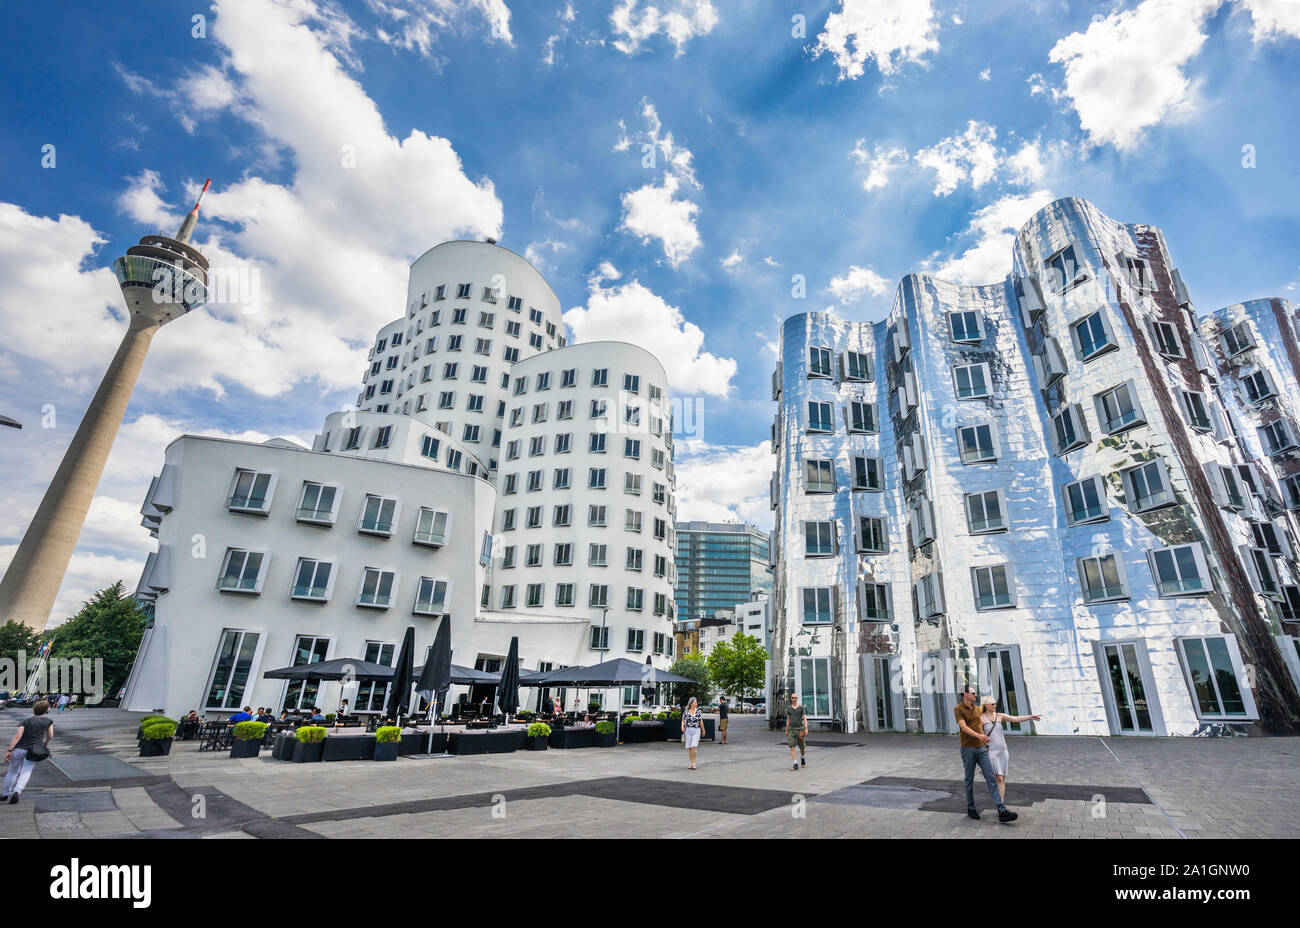 Die Gerry Gebäude am Düsseldorfer Medienhafen windt und Stretching in den Himmel in den ikonischen amerikanischen Architekten Frank O. Gehry ist Stil, ihre mirro Stockfoto